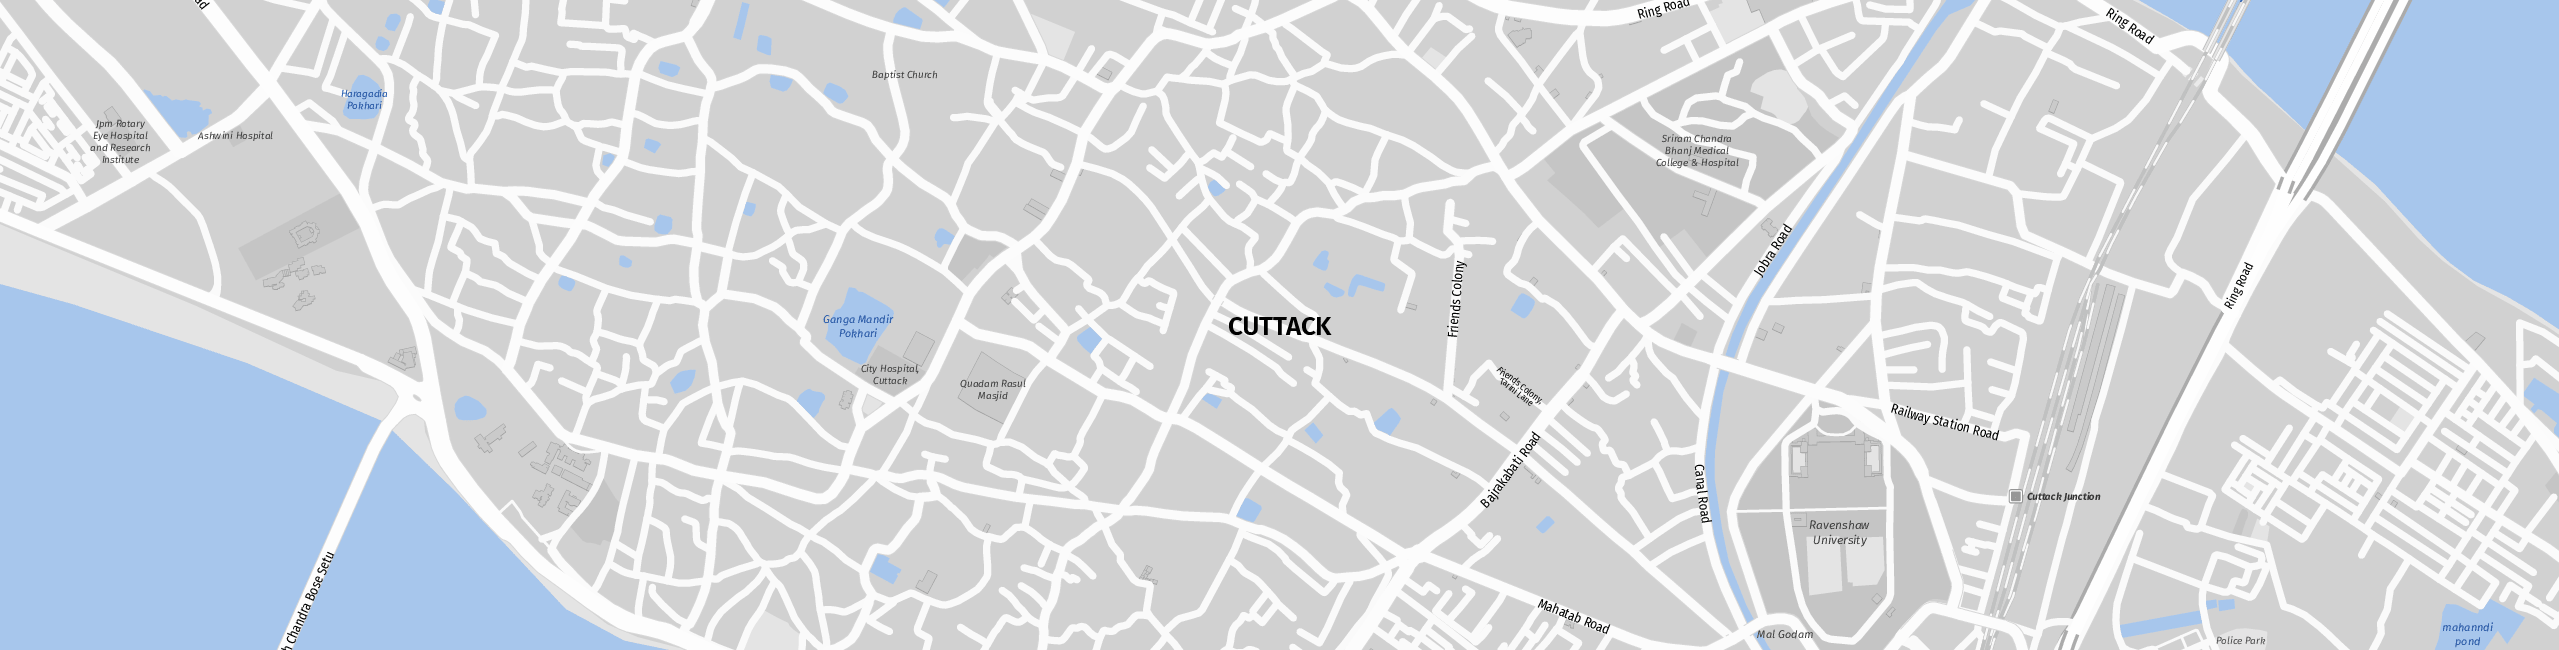 Stadtplan Cuttack zum Downloaden.